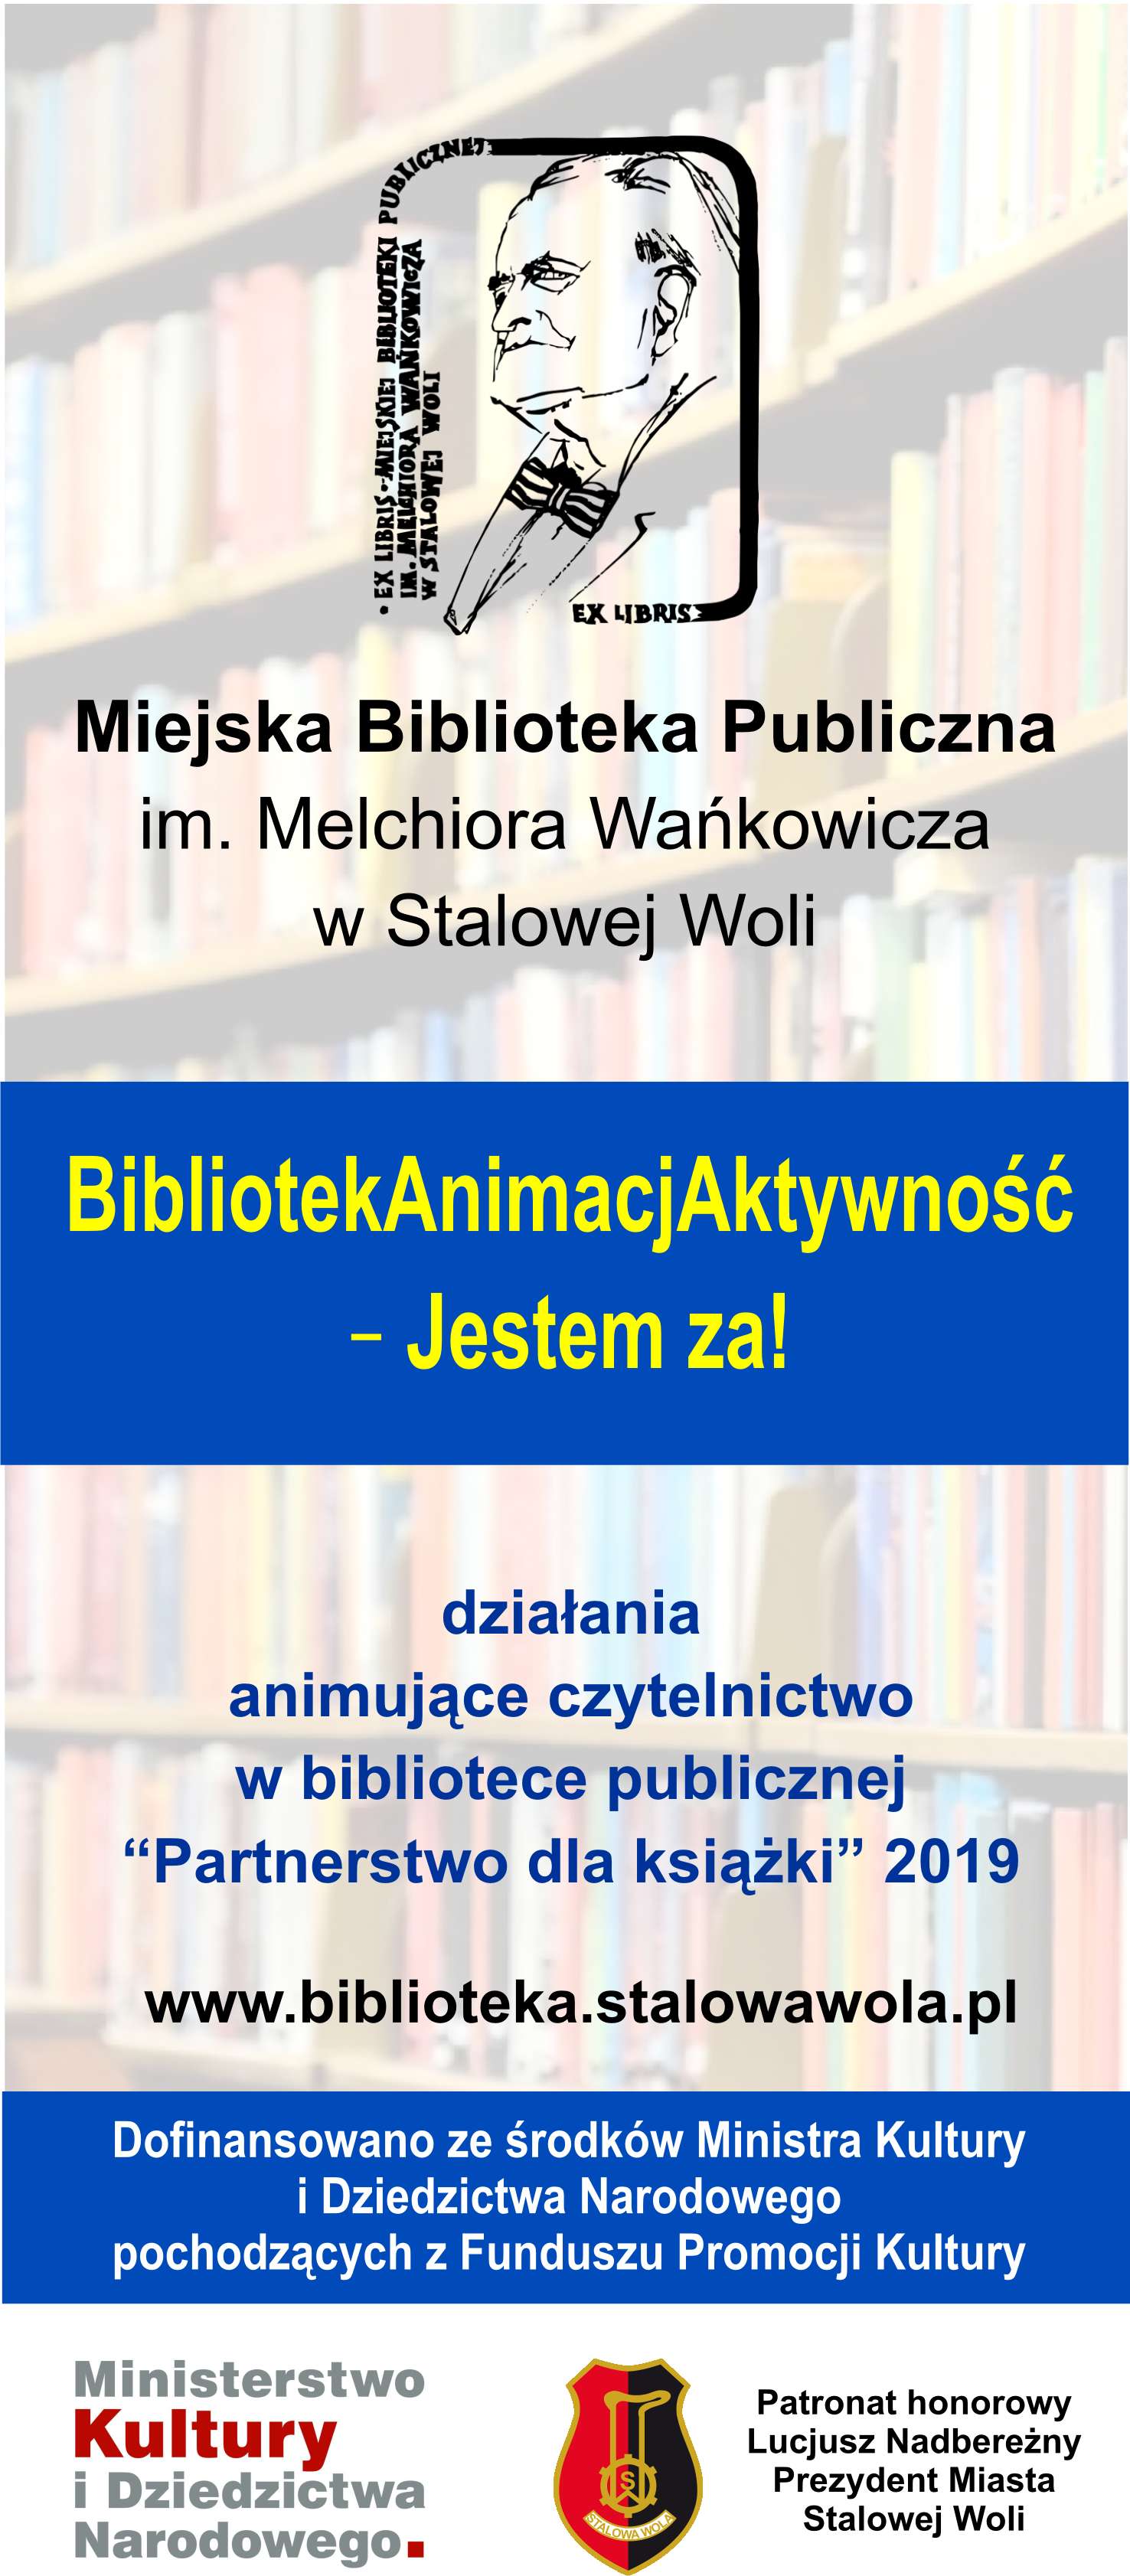 MBP w Stalowej Woli otrzymała dotację MKiDN na realizację projektu BibliotekAnimacjAktywność – Jestem za! 